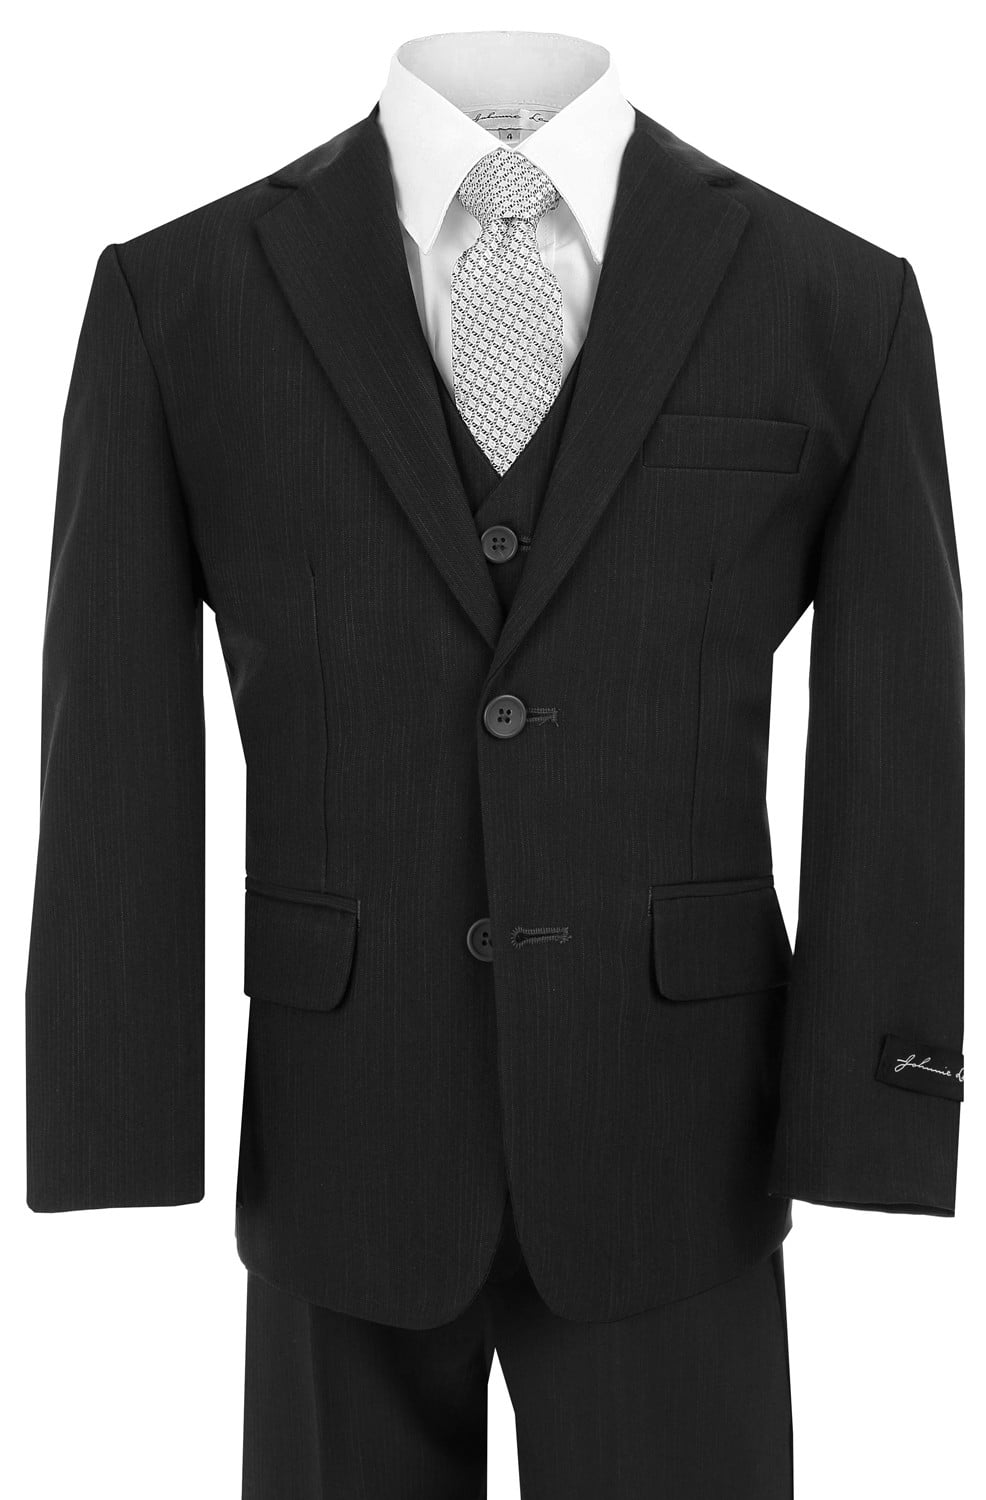 JL5040 Johnnie Lene Dress Up Boys Designer 2 Button Suit Set 